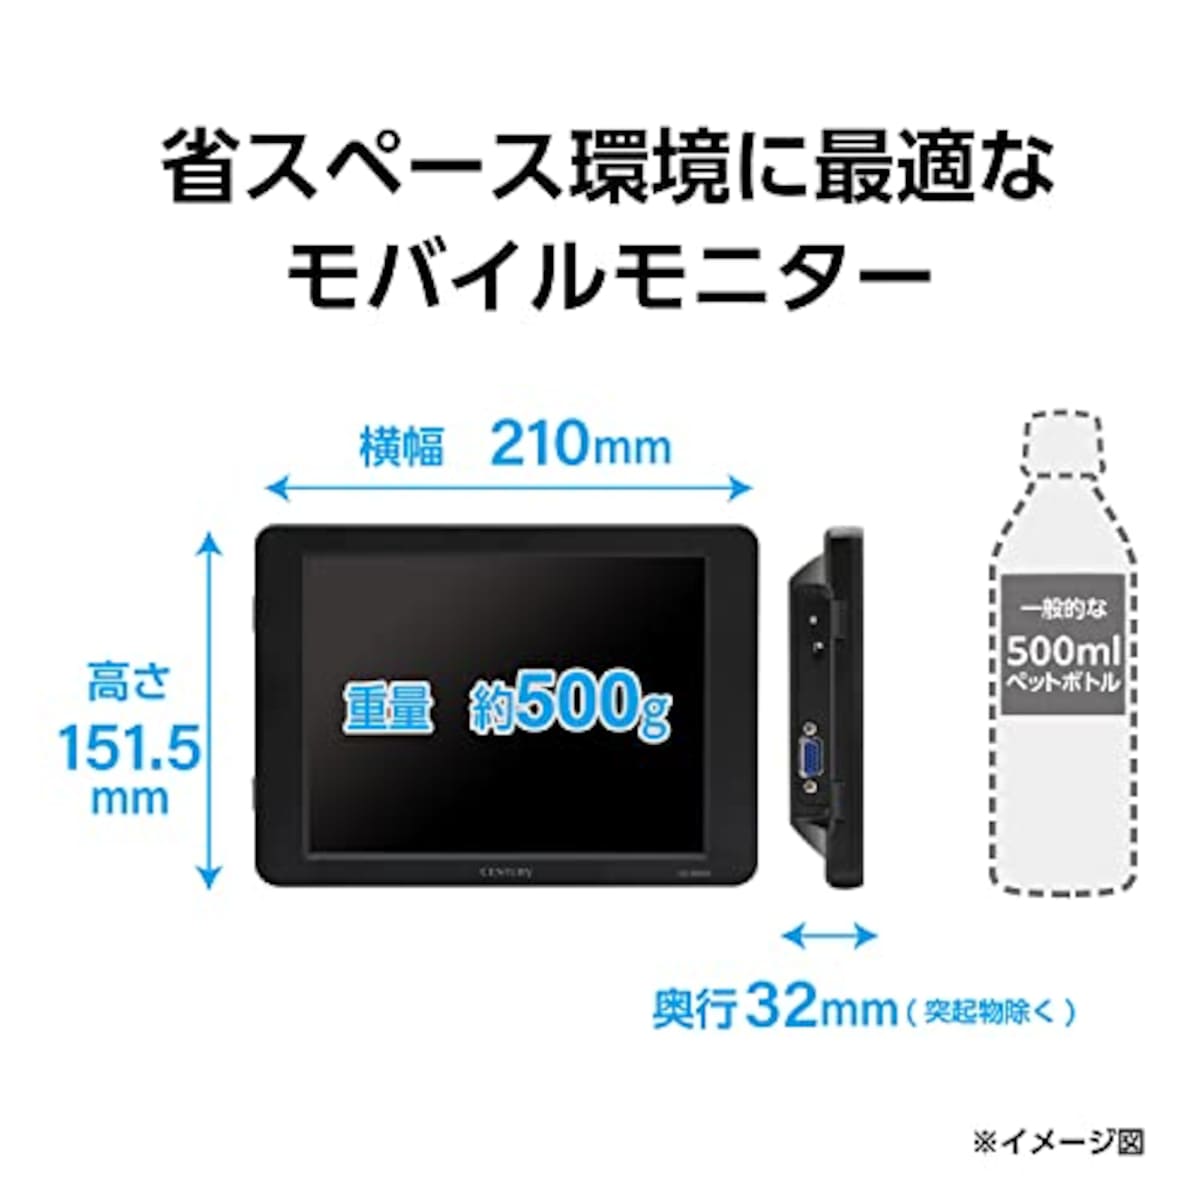  センチュリー 8インチアナログRGBモニター plus one VGA ブラック LCD-8000V3B_FP画像6 